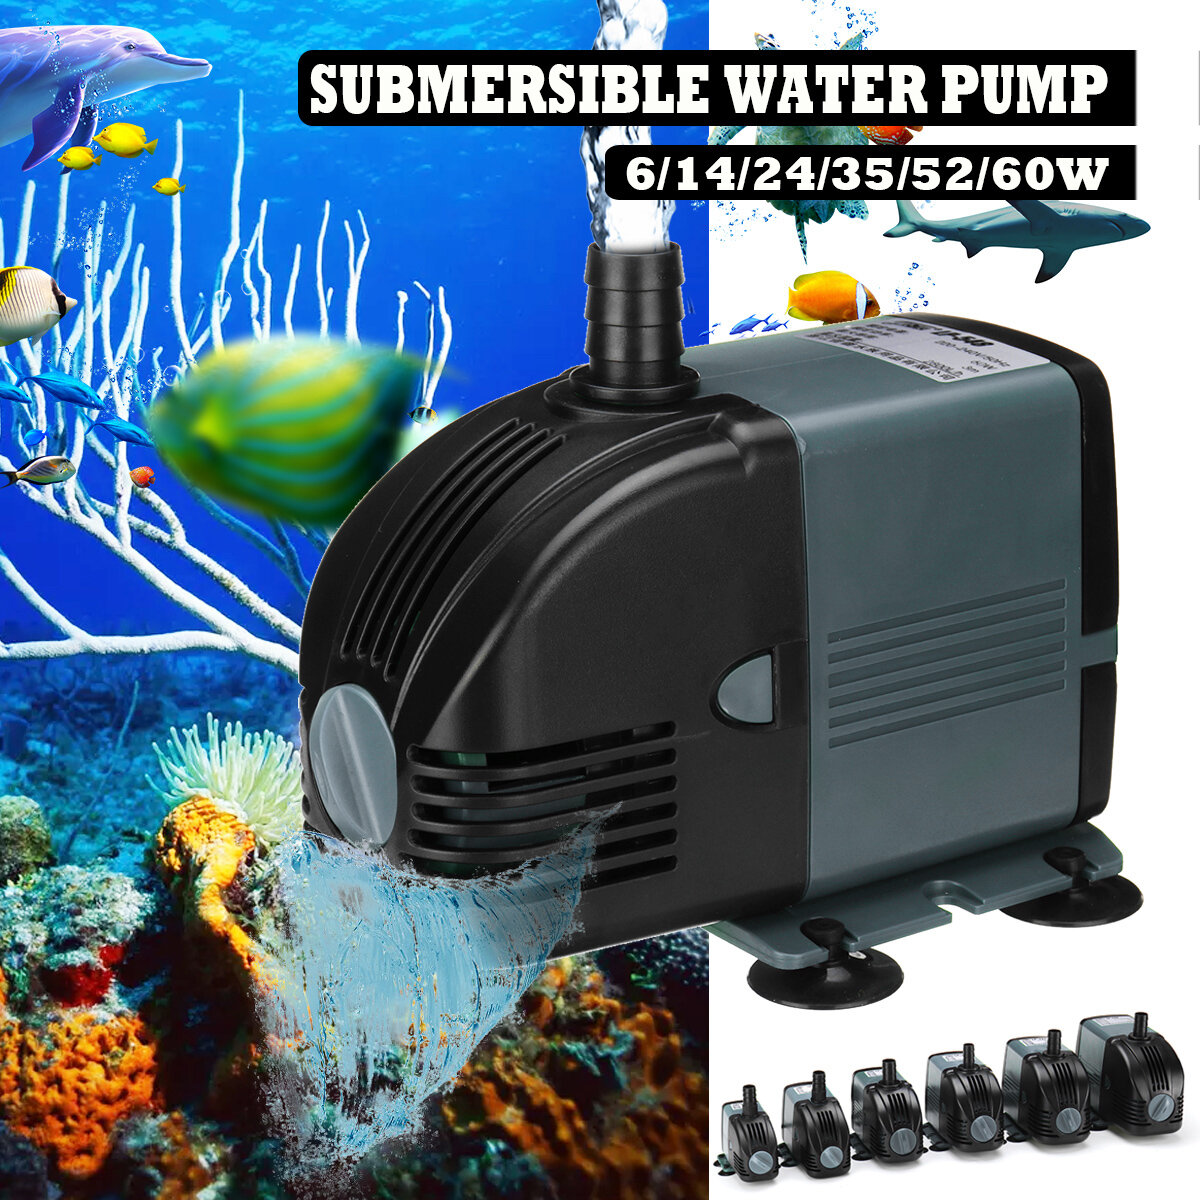 Στα 6.59 € από αποθήκη Κίνας | 6/14/24/35/52/60W Submersible Water Pump Low Noise Durable Aquarium Tank Fish Fountain Pump